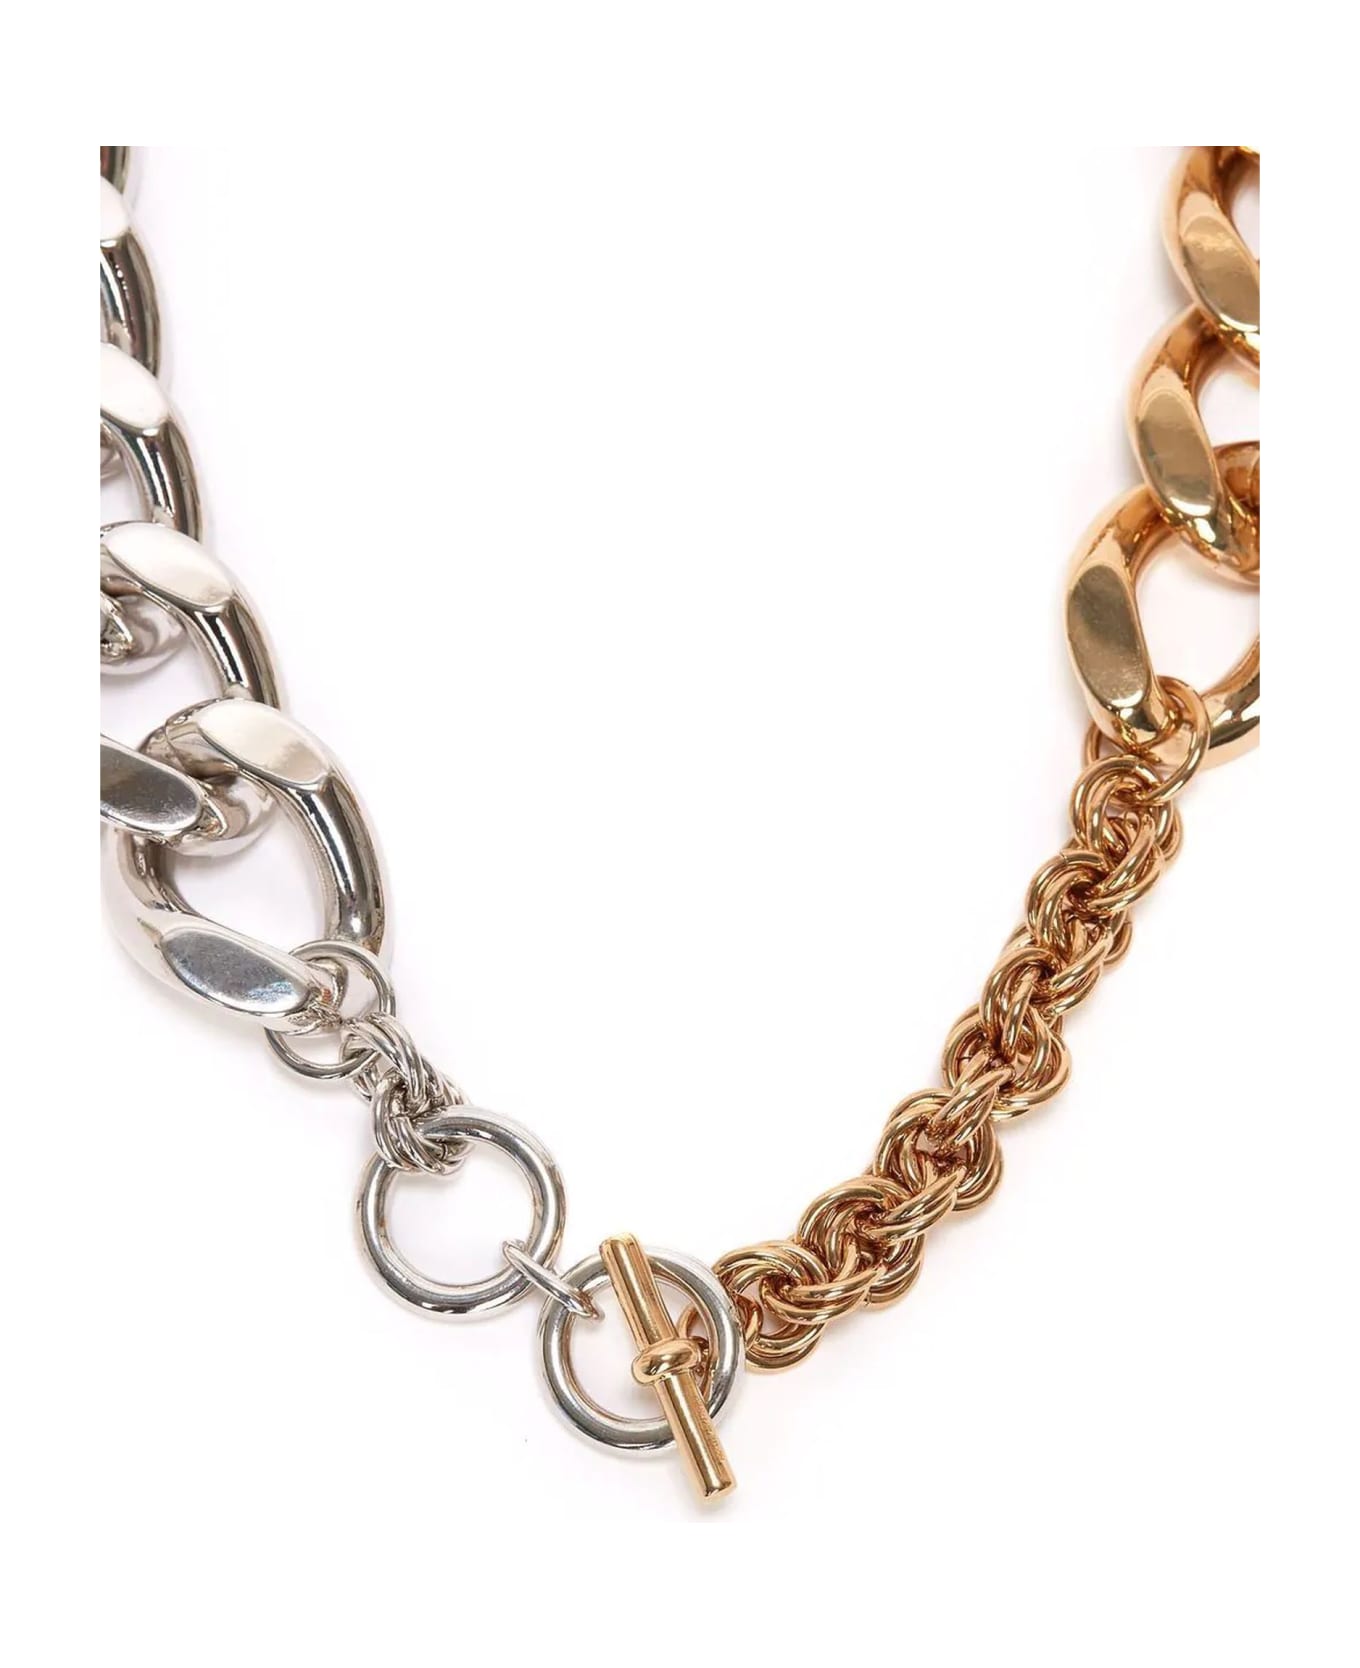 J.W. Anderson Gold-tone And Silver-tone Chain Necklace - Oro